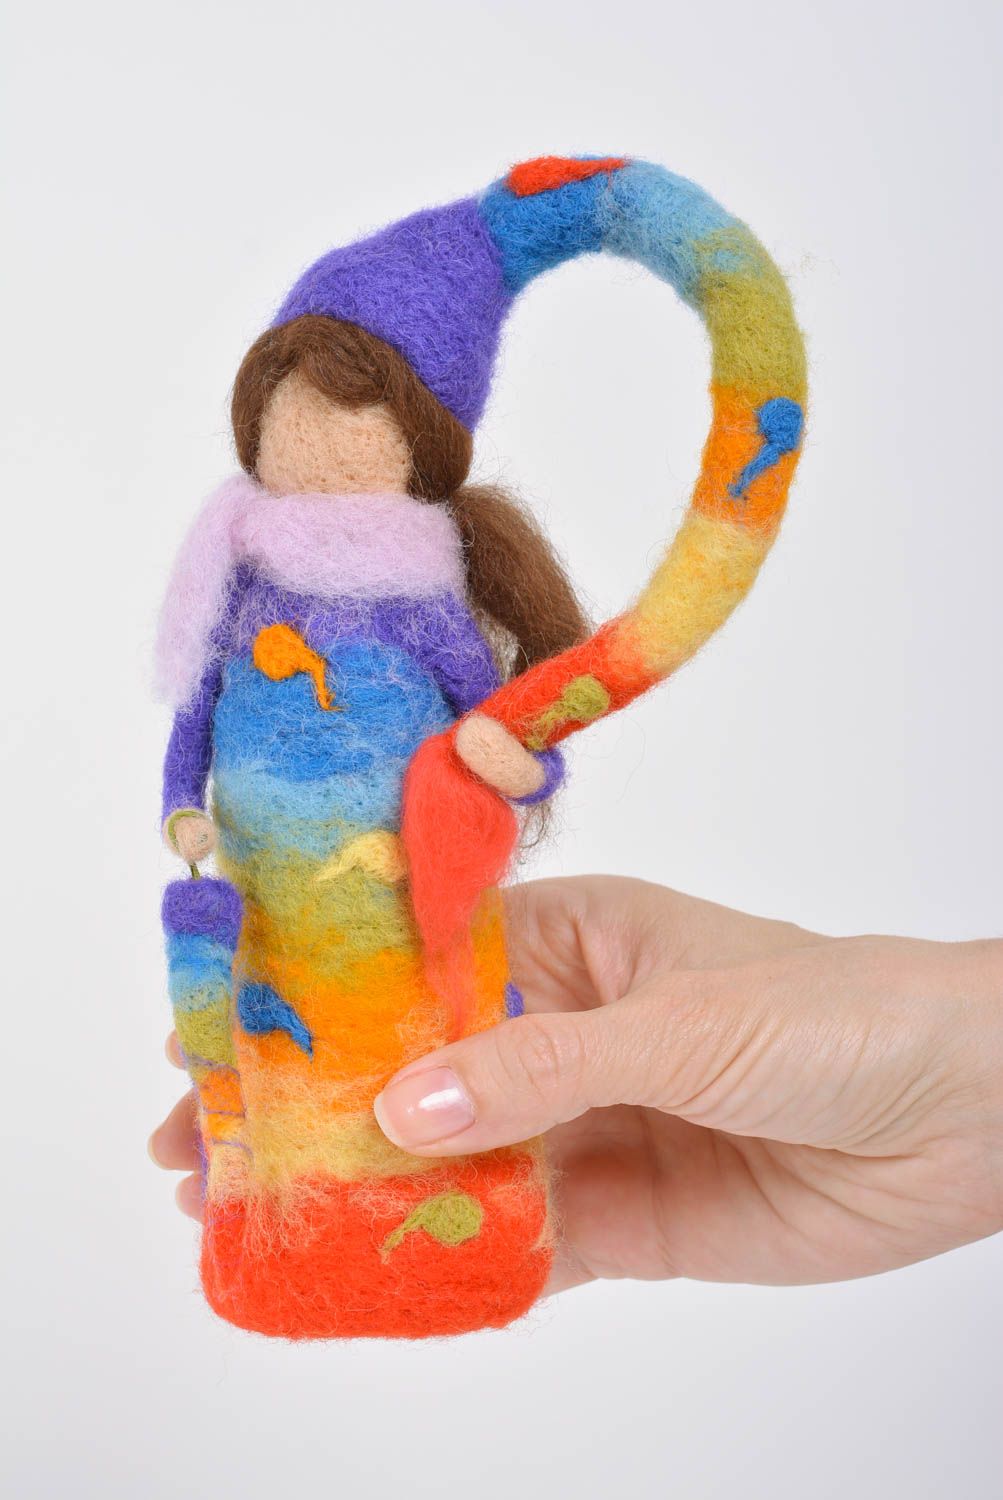 Яркая кукла в технике валяния игрушка для ребенка или статуэтка небольшая хенд мейд фото 3